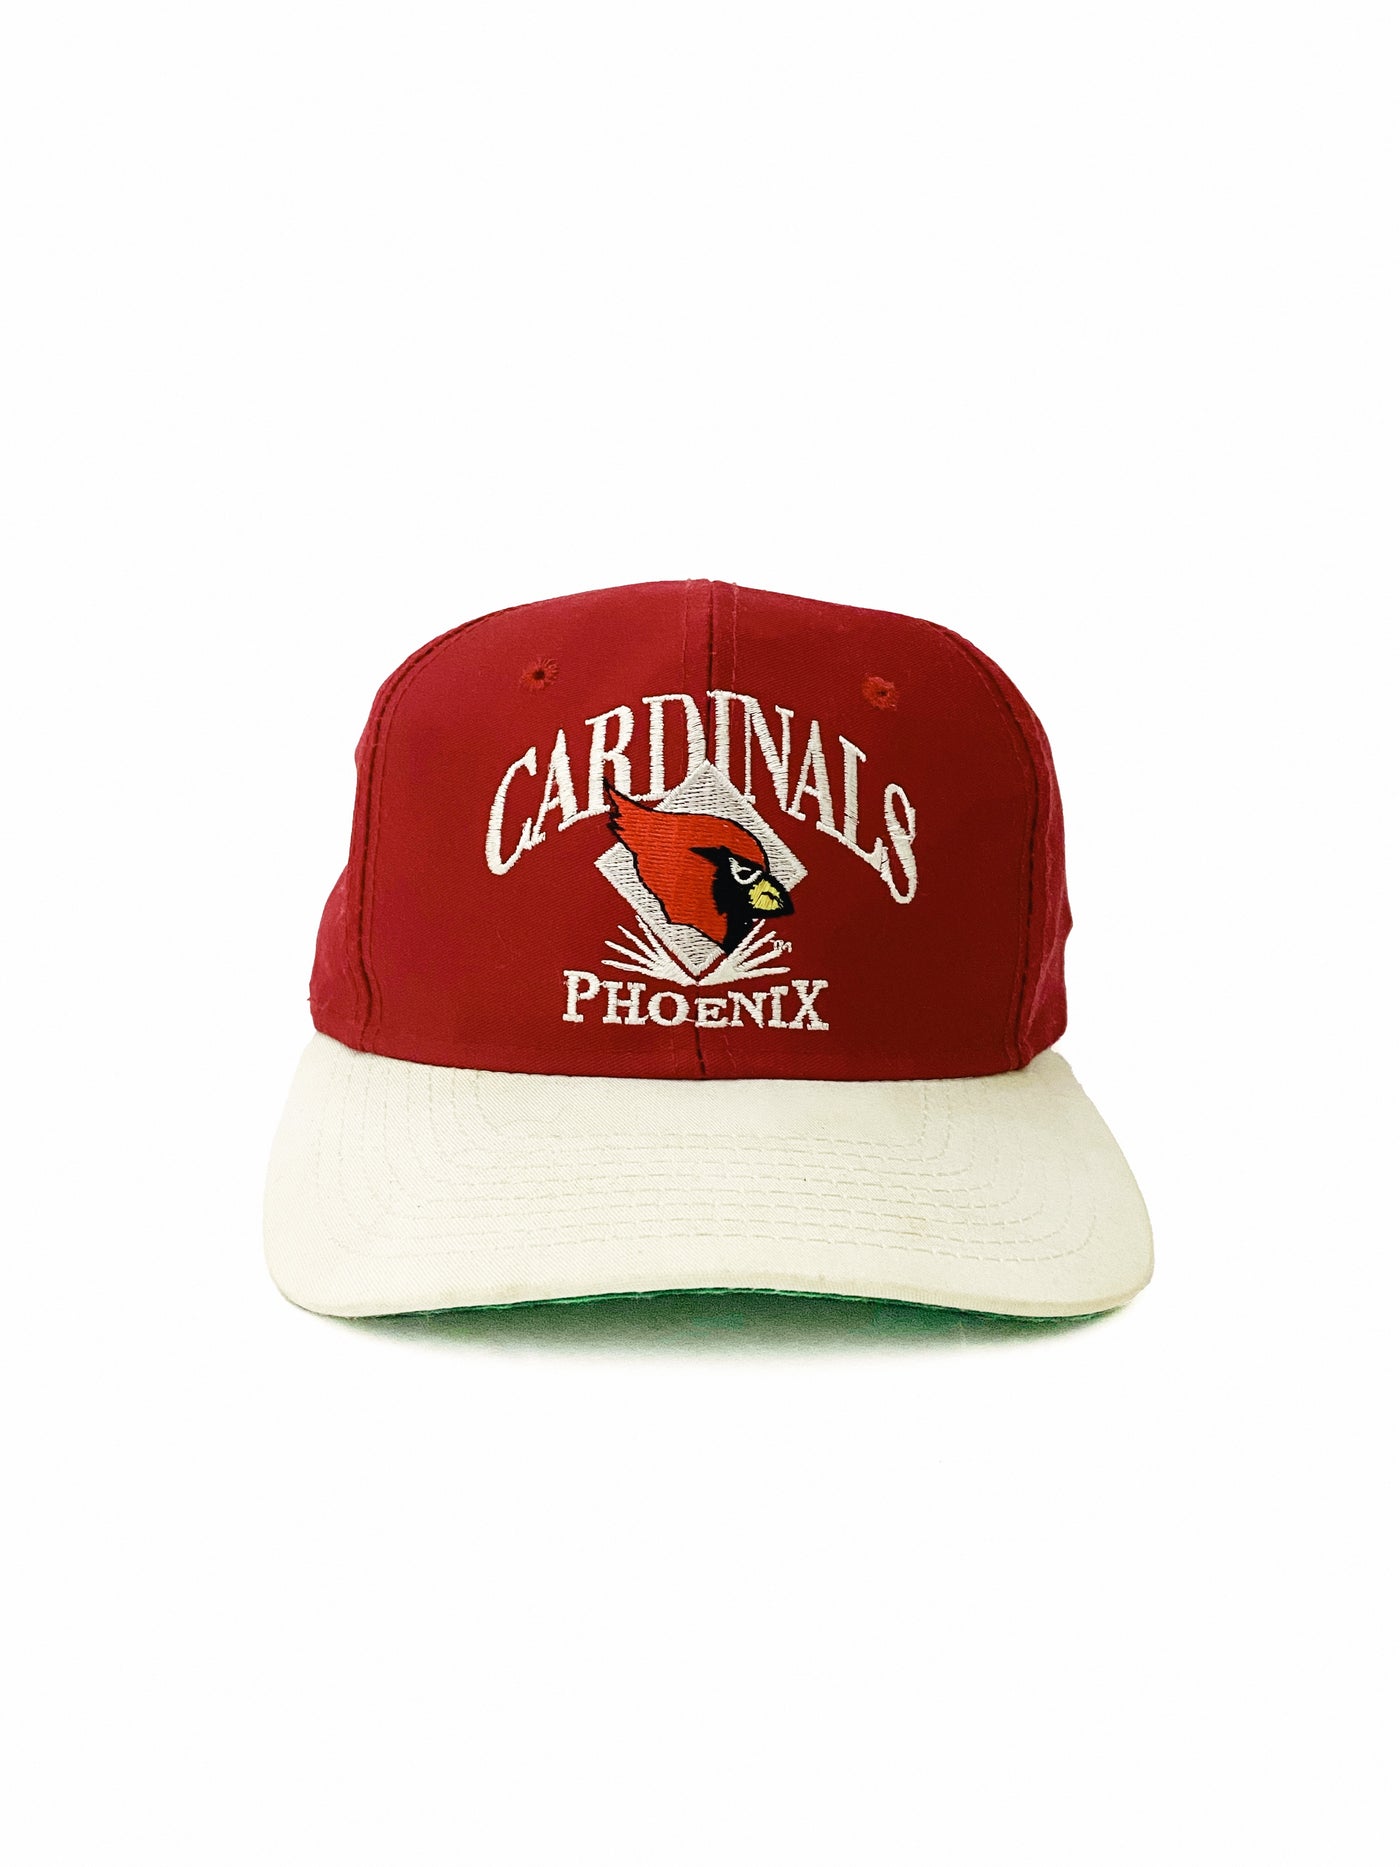 Vintage 1993 Phoenix Cardinals Snapback